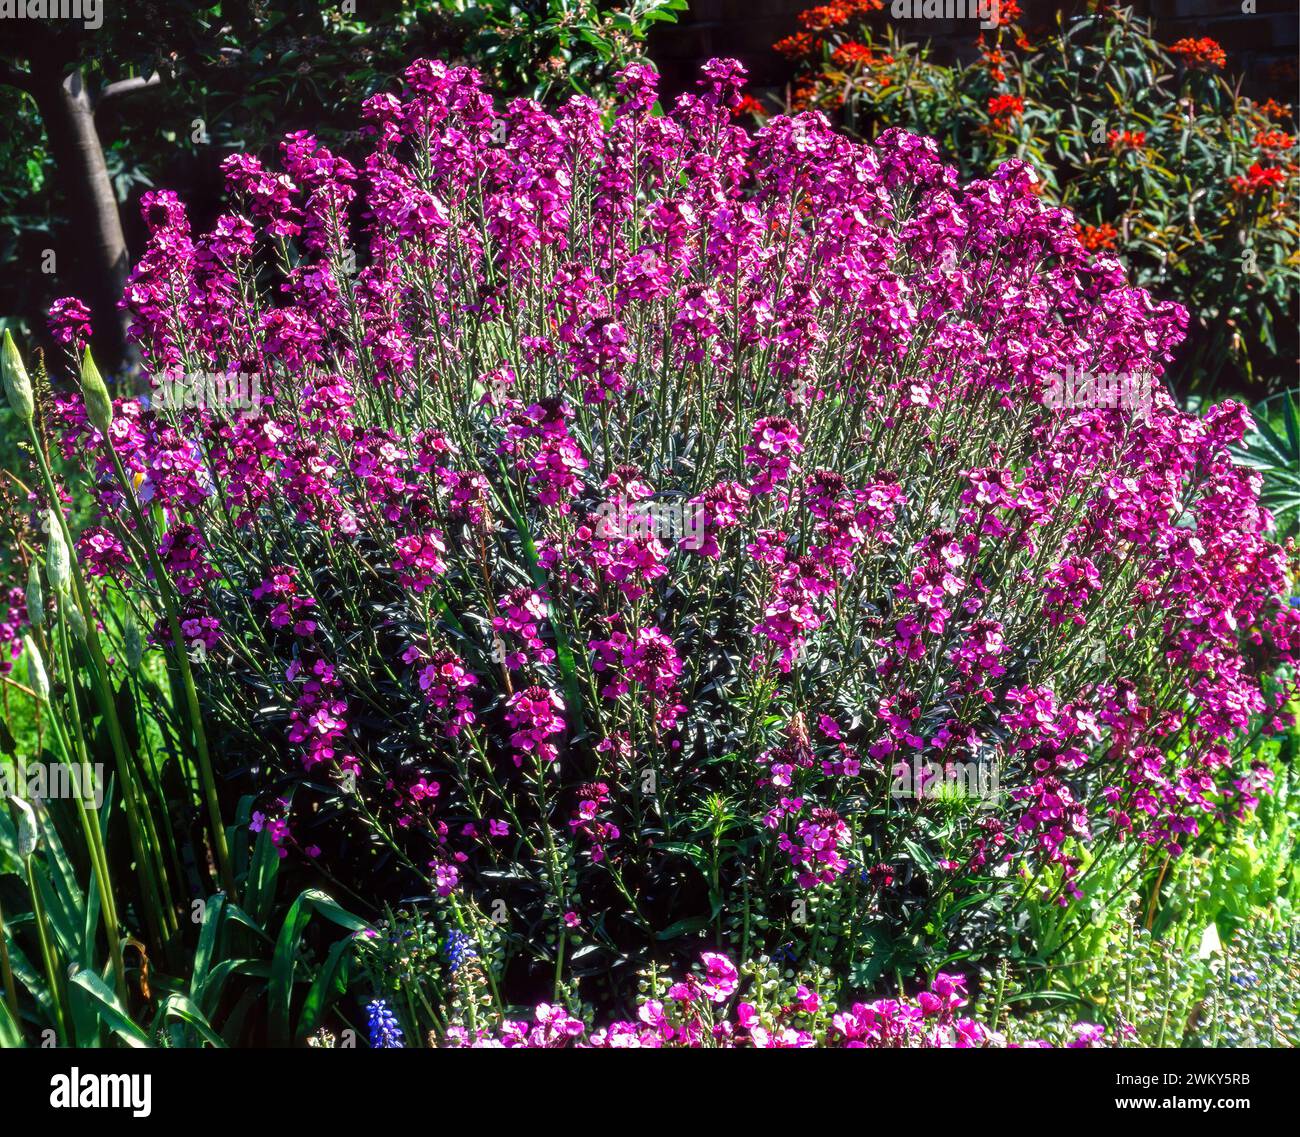 Immergrüner mehrjähriger Erysium-Wallblumenstrauch „Bowles's Mauve“, bedeckt mit violetten Blüten, wächst im englischen Garten im Juni, England, Vereinigtes Königreich Stockfoto